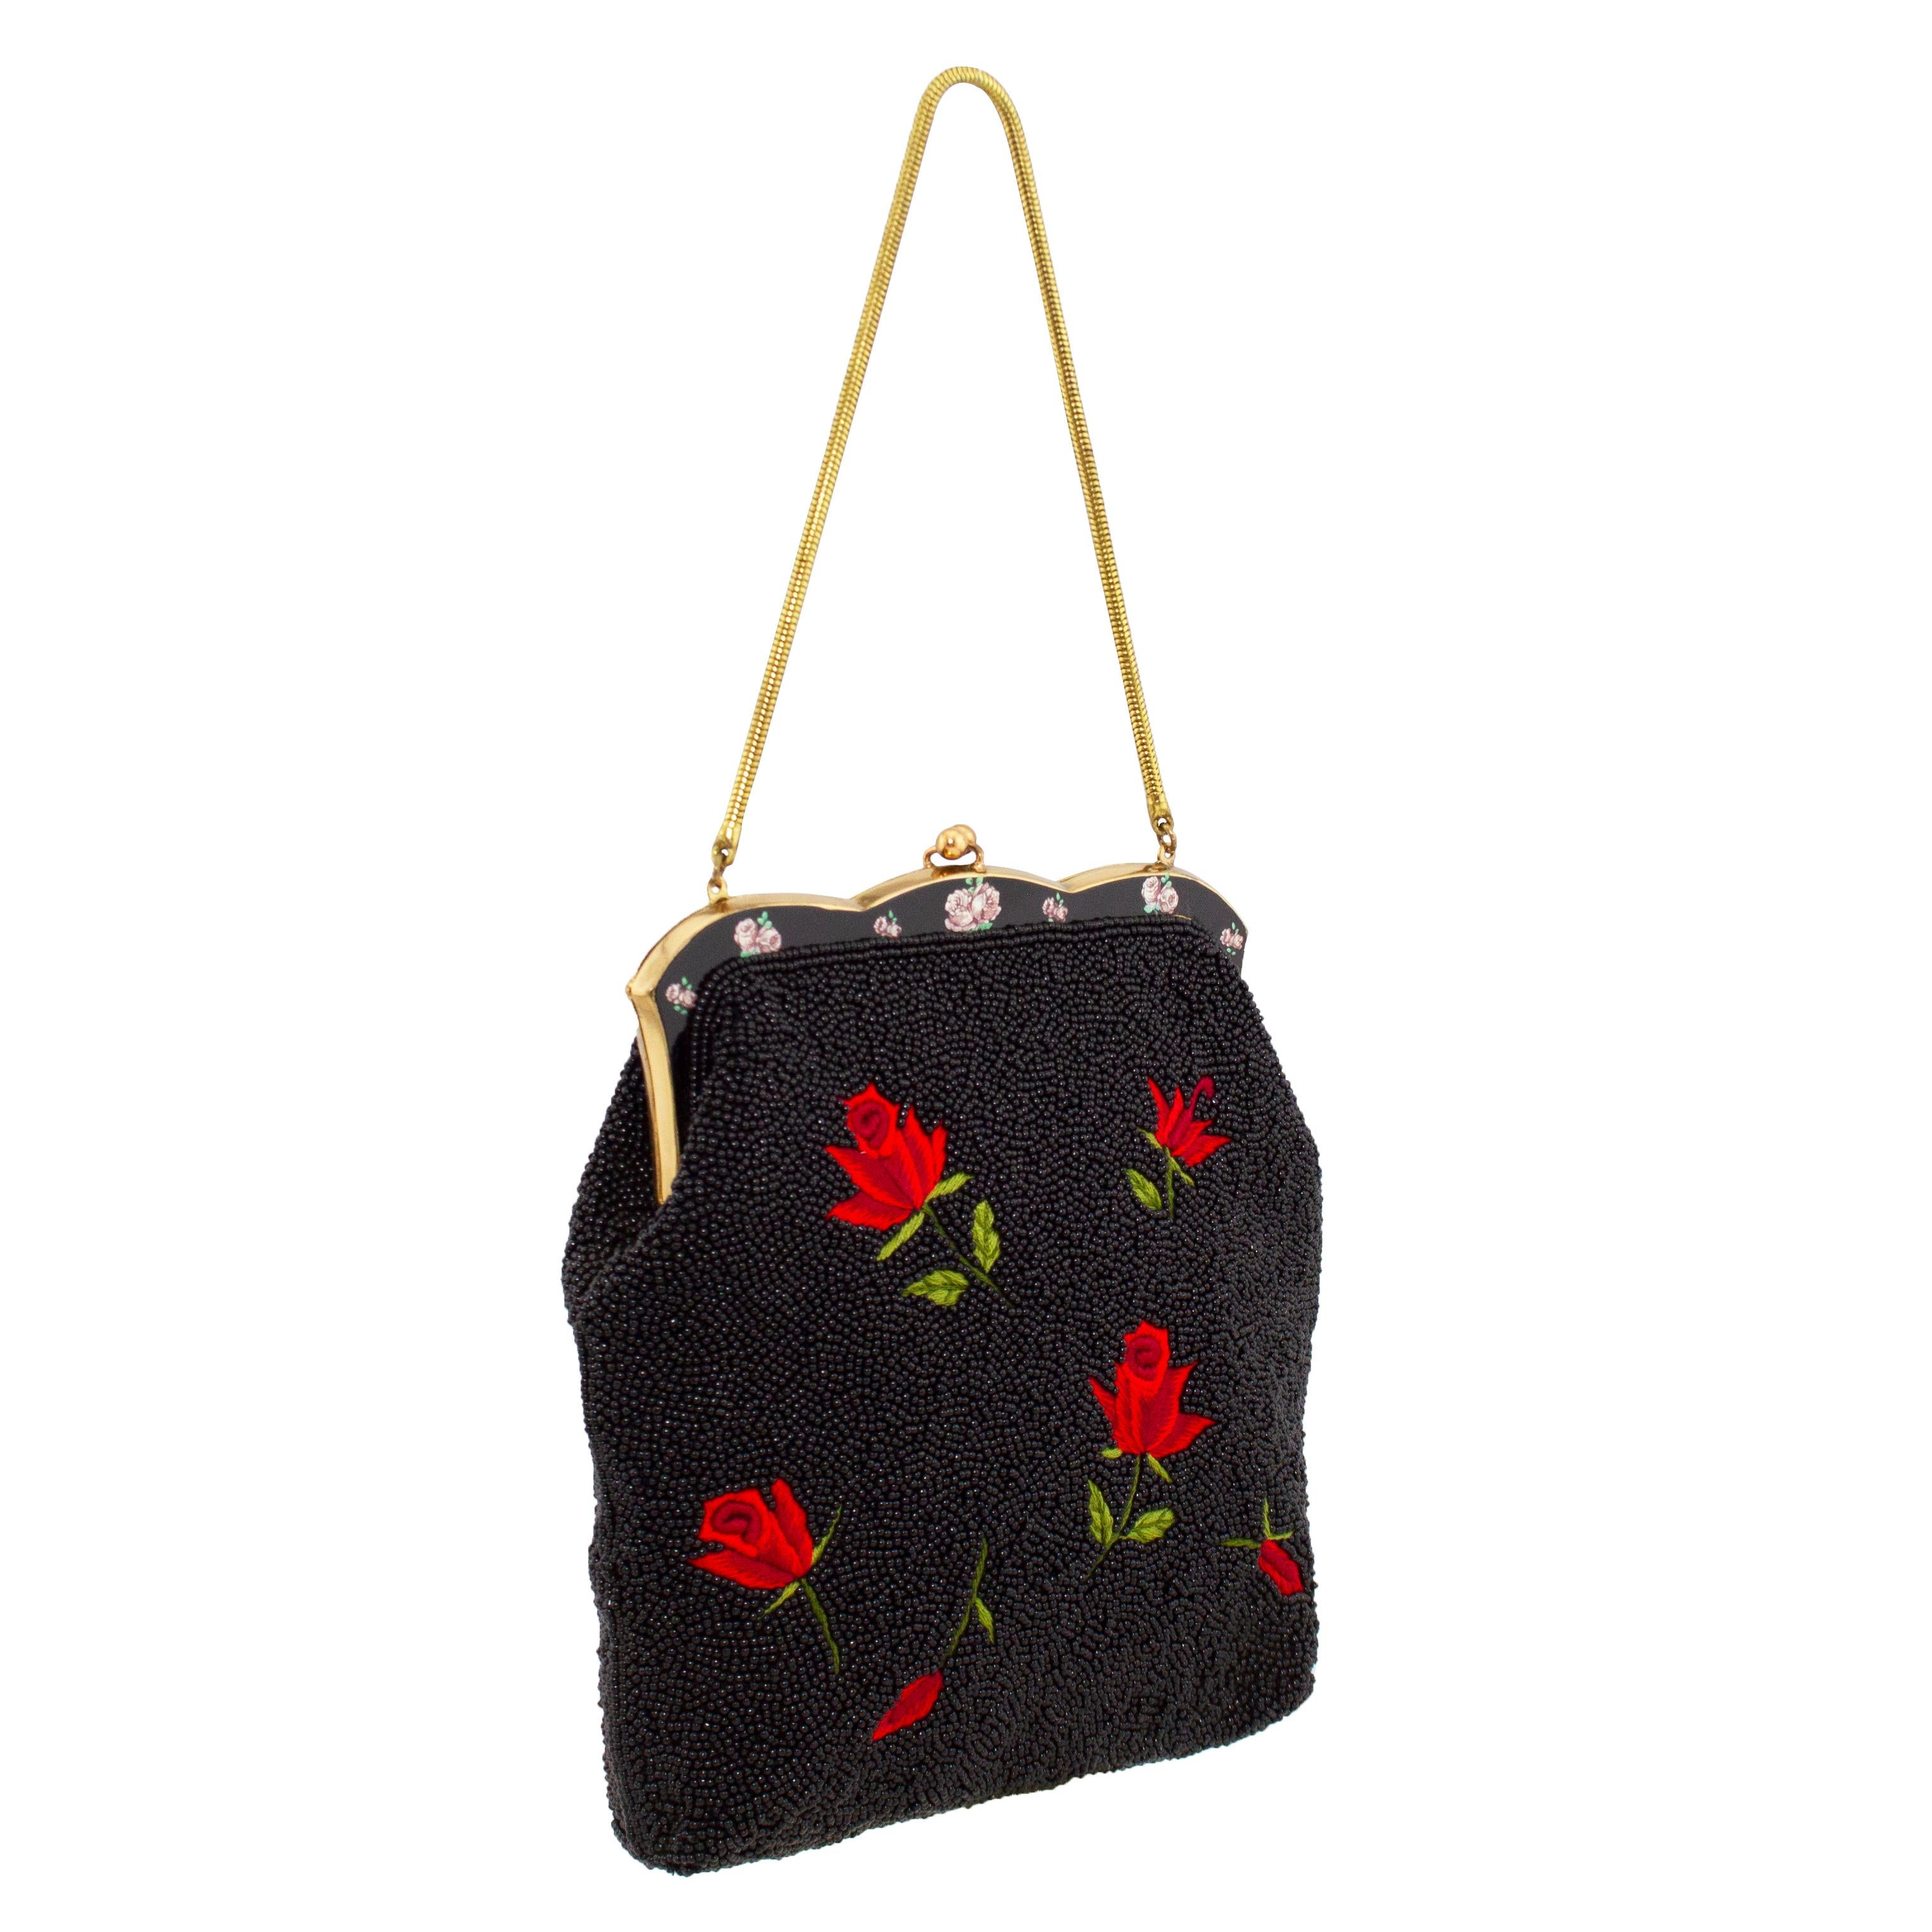 Die schönste Abendtasche aus den 1950er Jahren. Dieses Stück ist vollständig mit winzigen schwarzen Saatperlen besetzt, die durch gestickte rote und grüne Rosen lebhaft kontrastiert werden. Der Rahmen der Tasche ist aus goldfarbenem und schwarzem